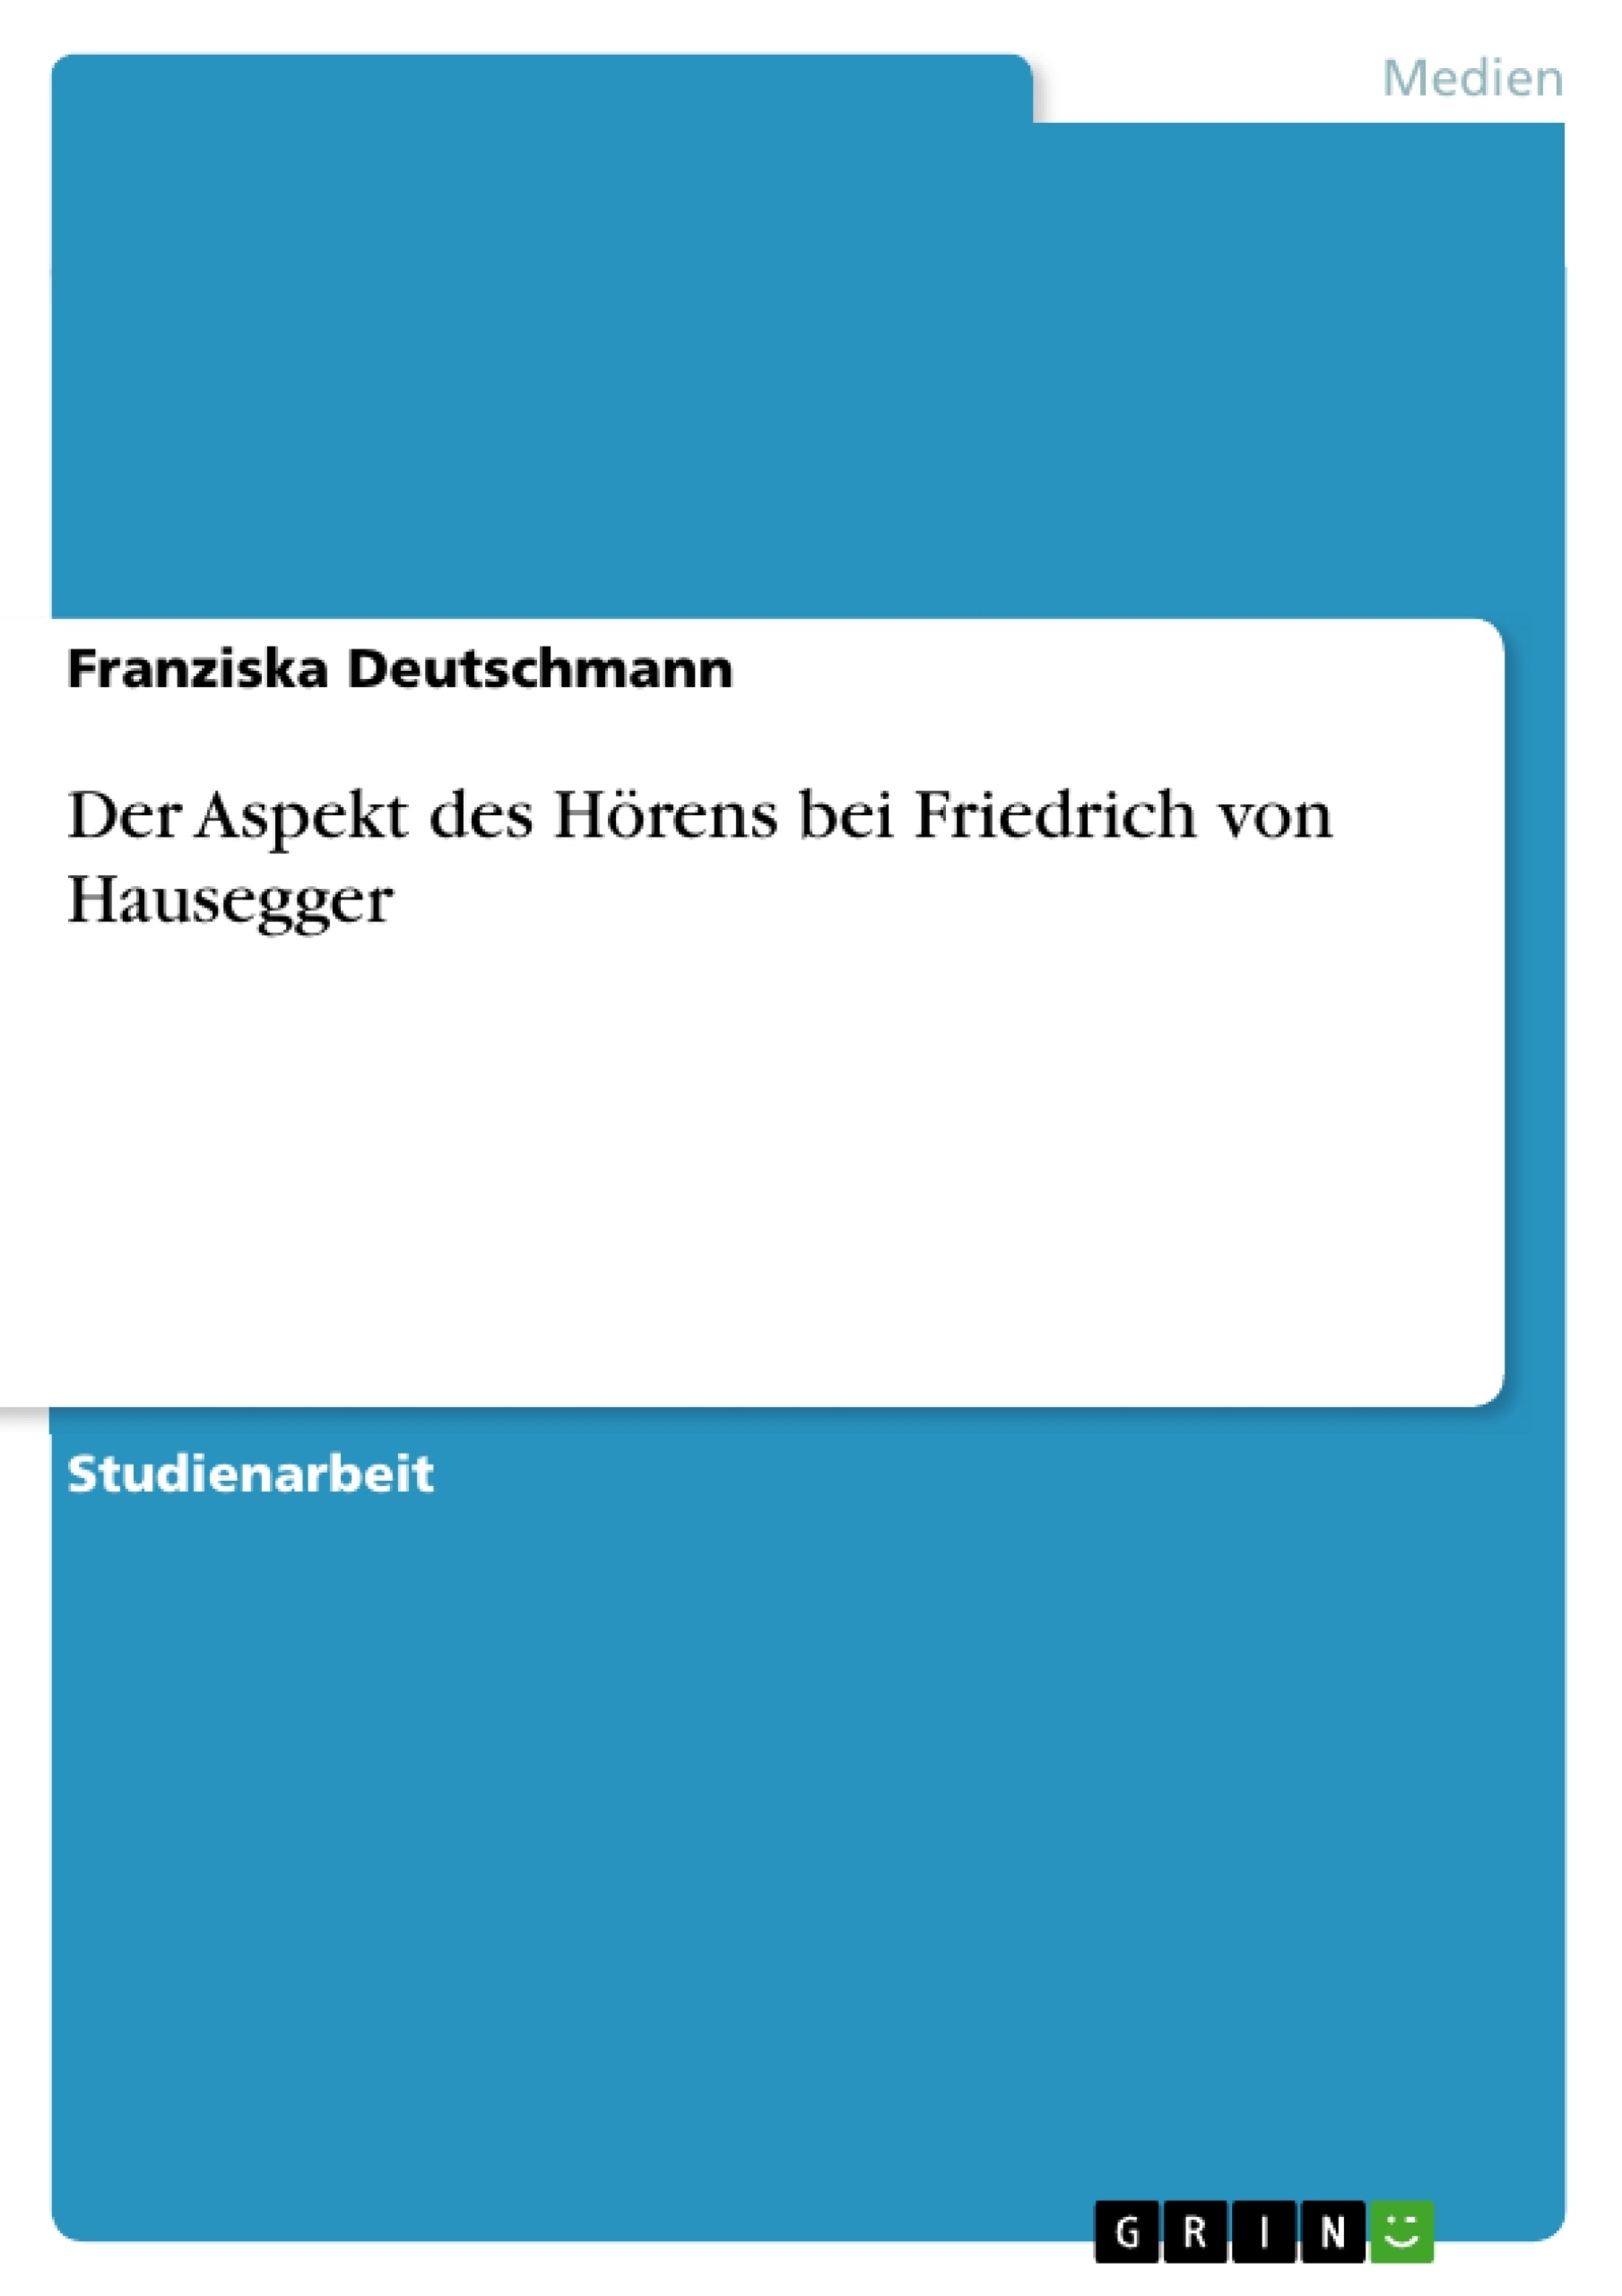 Title: Der Aspekt des Hörens bei Friedrich von Hausegger